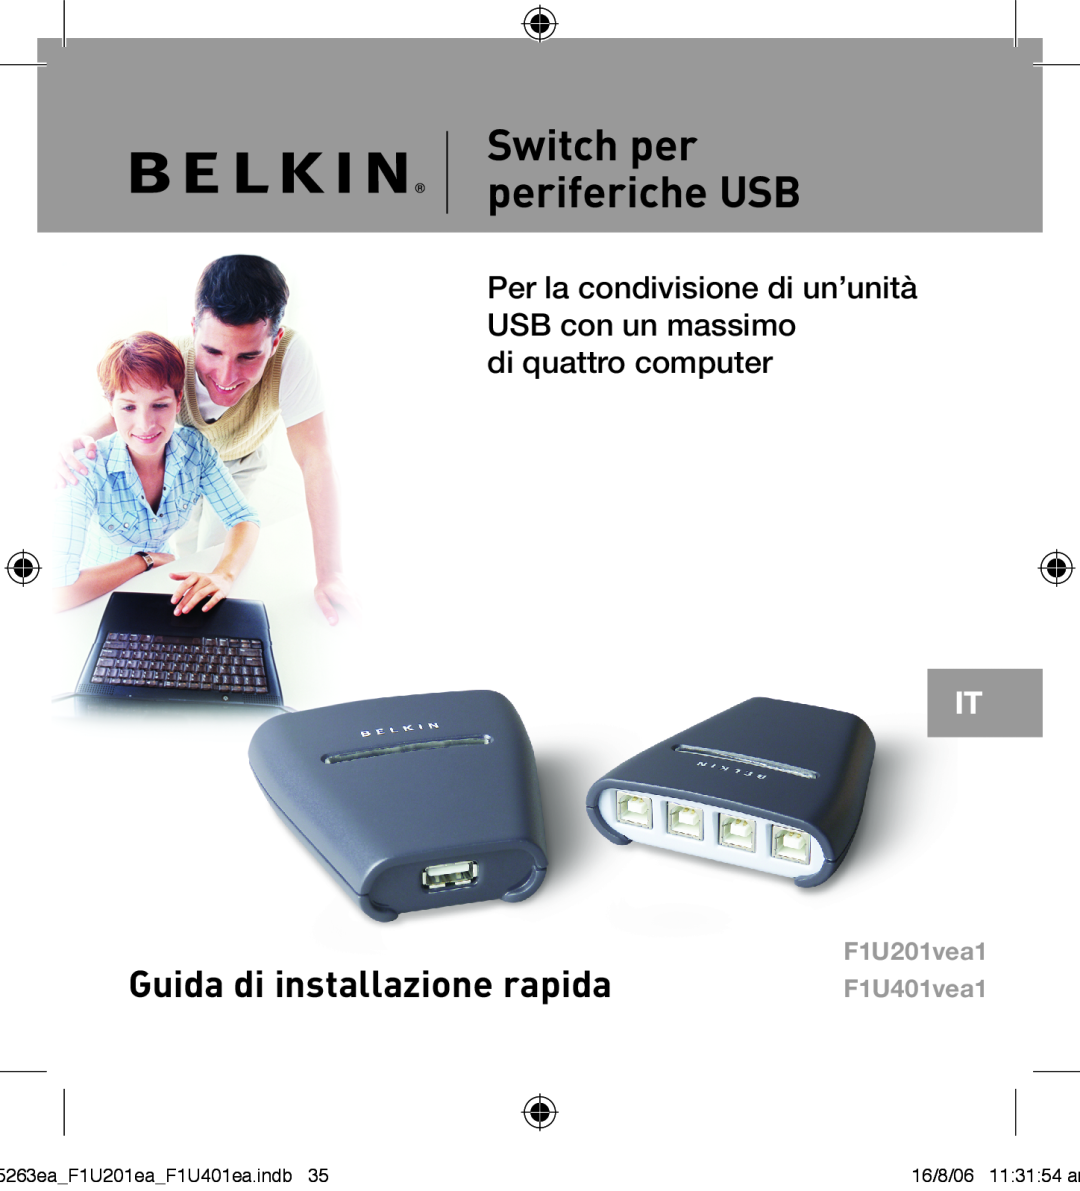 Belkin F1U201VEA1 Switch per periferiche USB, Guida di installazione rapida, di quattro computer, F1U201vea1 F1U401vea1 